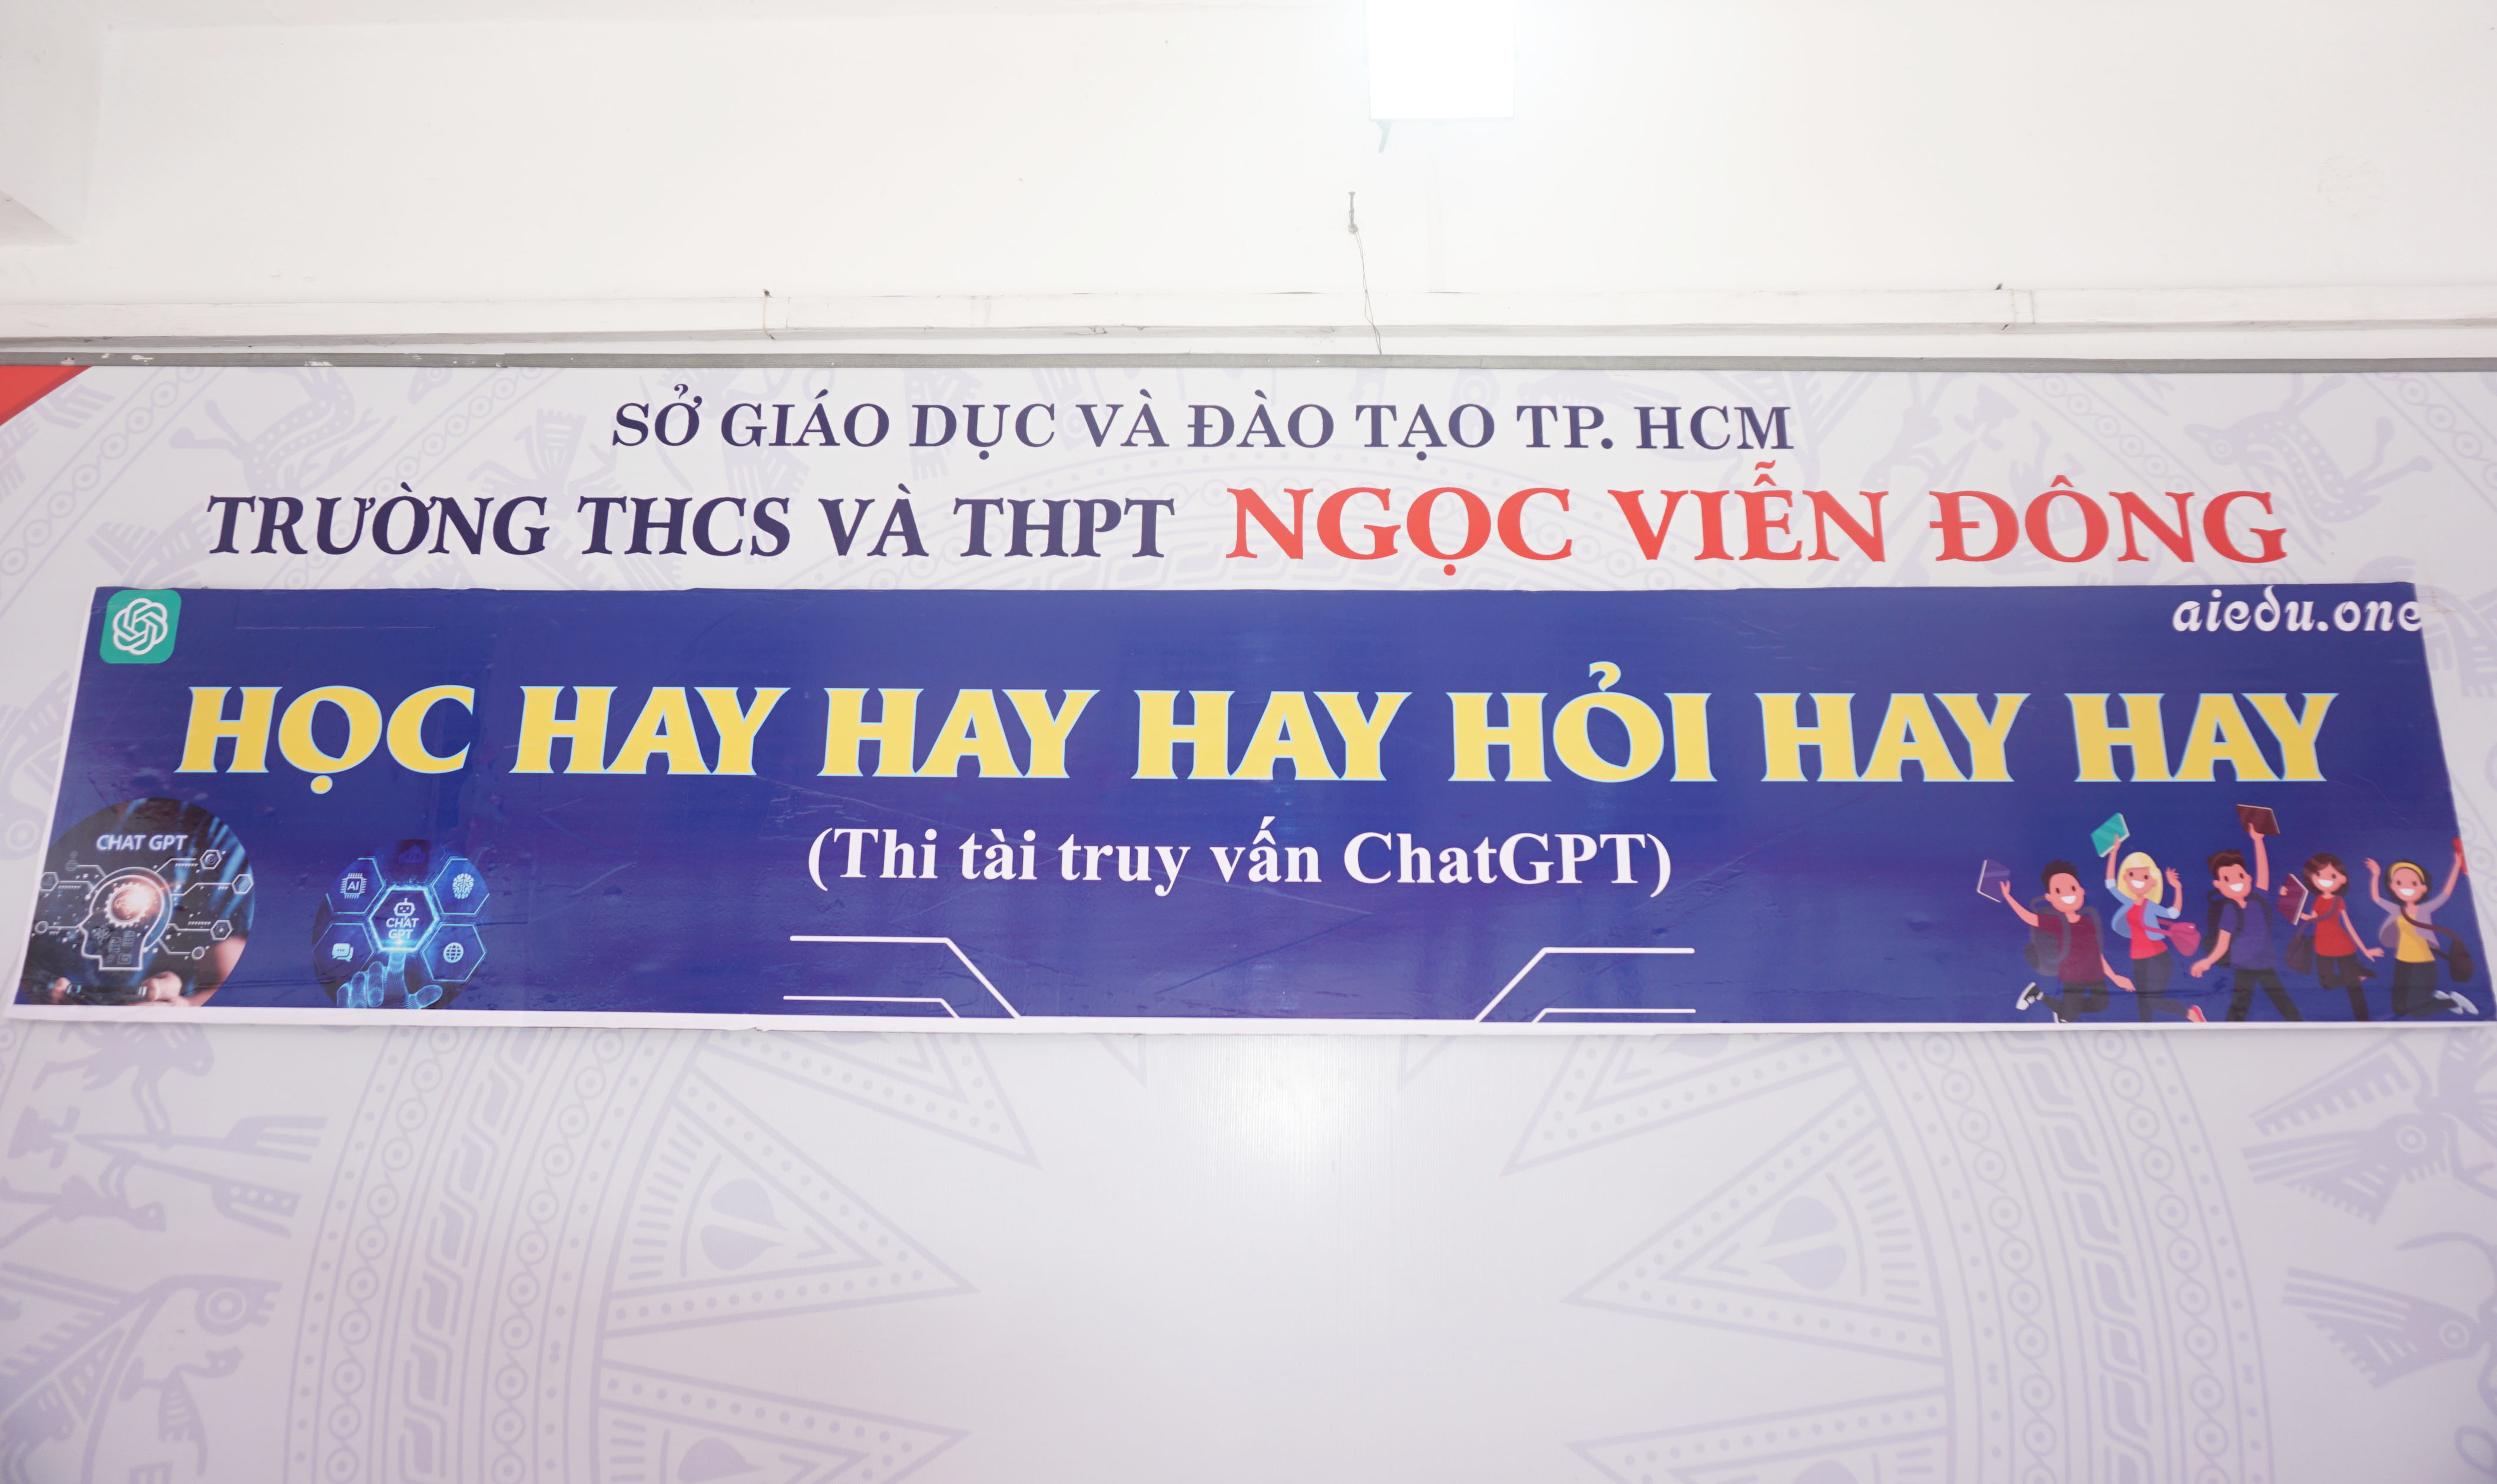 Thi tài truy vấn ChatGPT với chủ đề HỌC HAY HAY HAY HỎI HAY HAY của trường THCS và THPT Ngọc Viễn Đông và Fanpage Facebook AIEDU.ONE